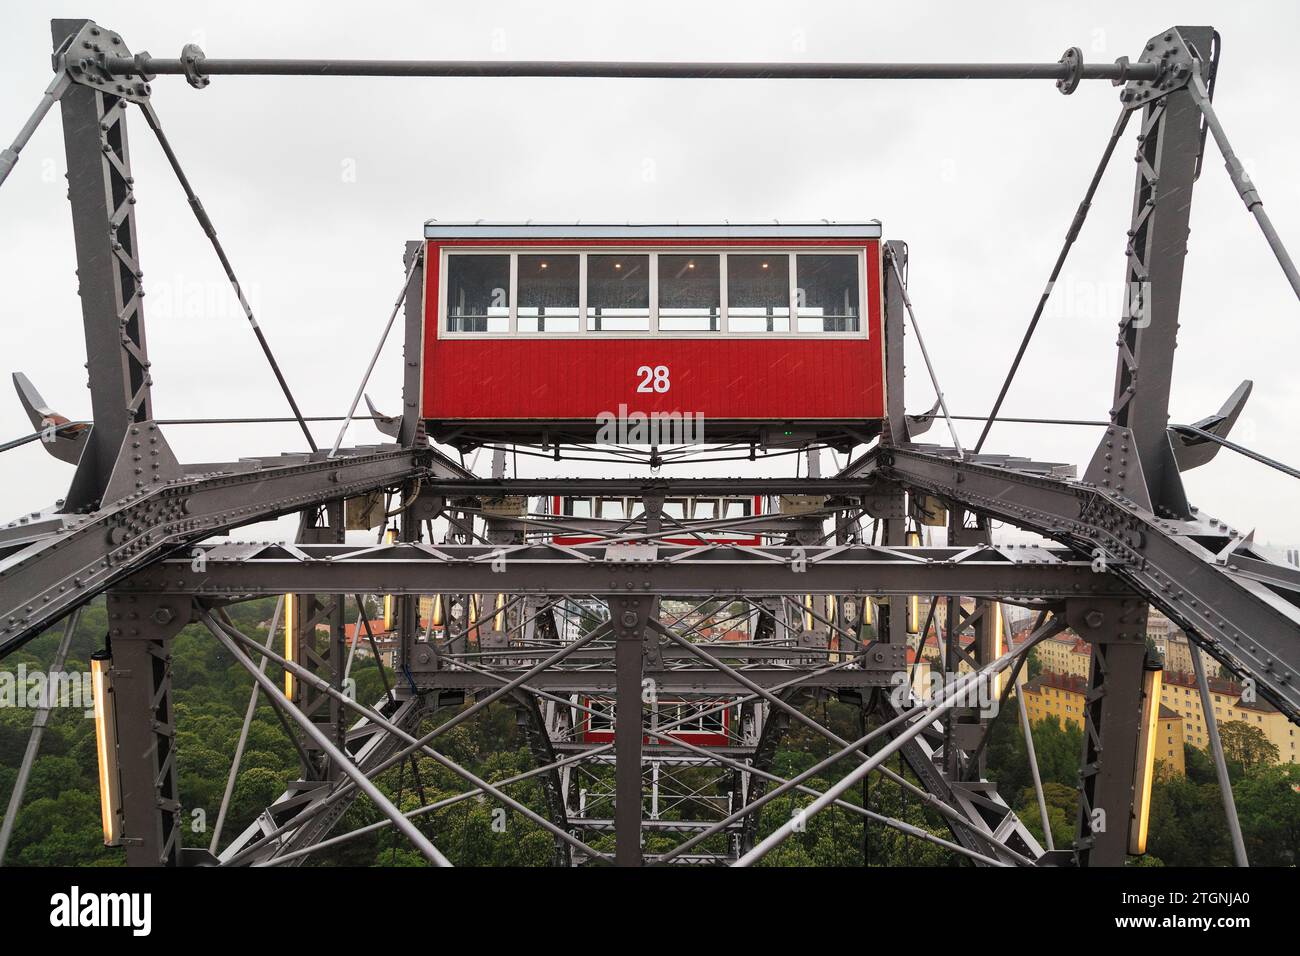 VIENNA, AUSTRIA - 15 MAGGIO 2019: Questo è un tradizionale carro rosso su una vecchia ruota panoramica nel Prater Park. Foto Stock